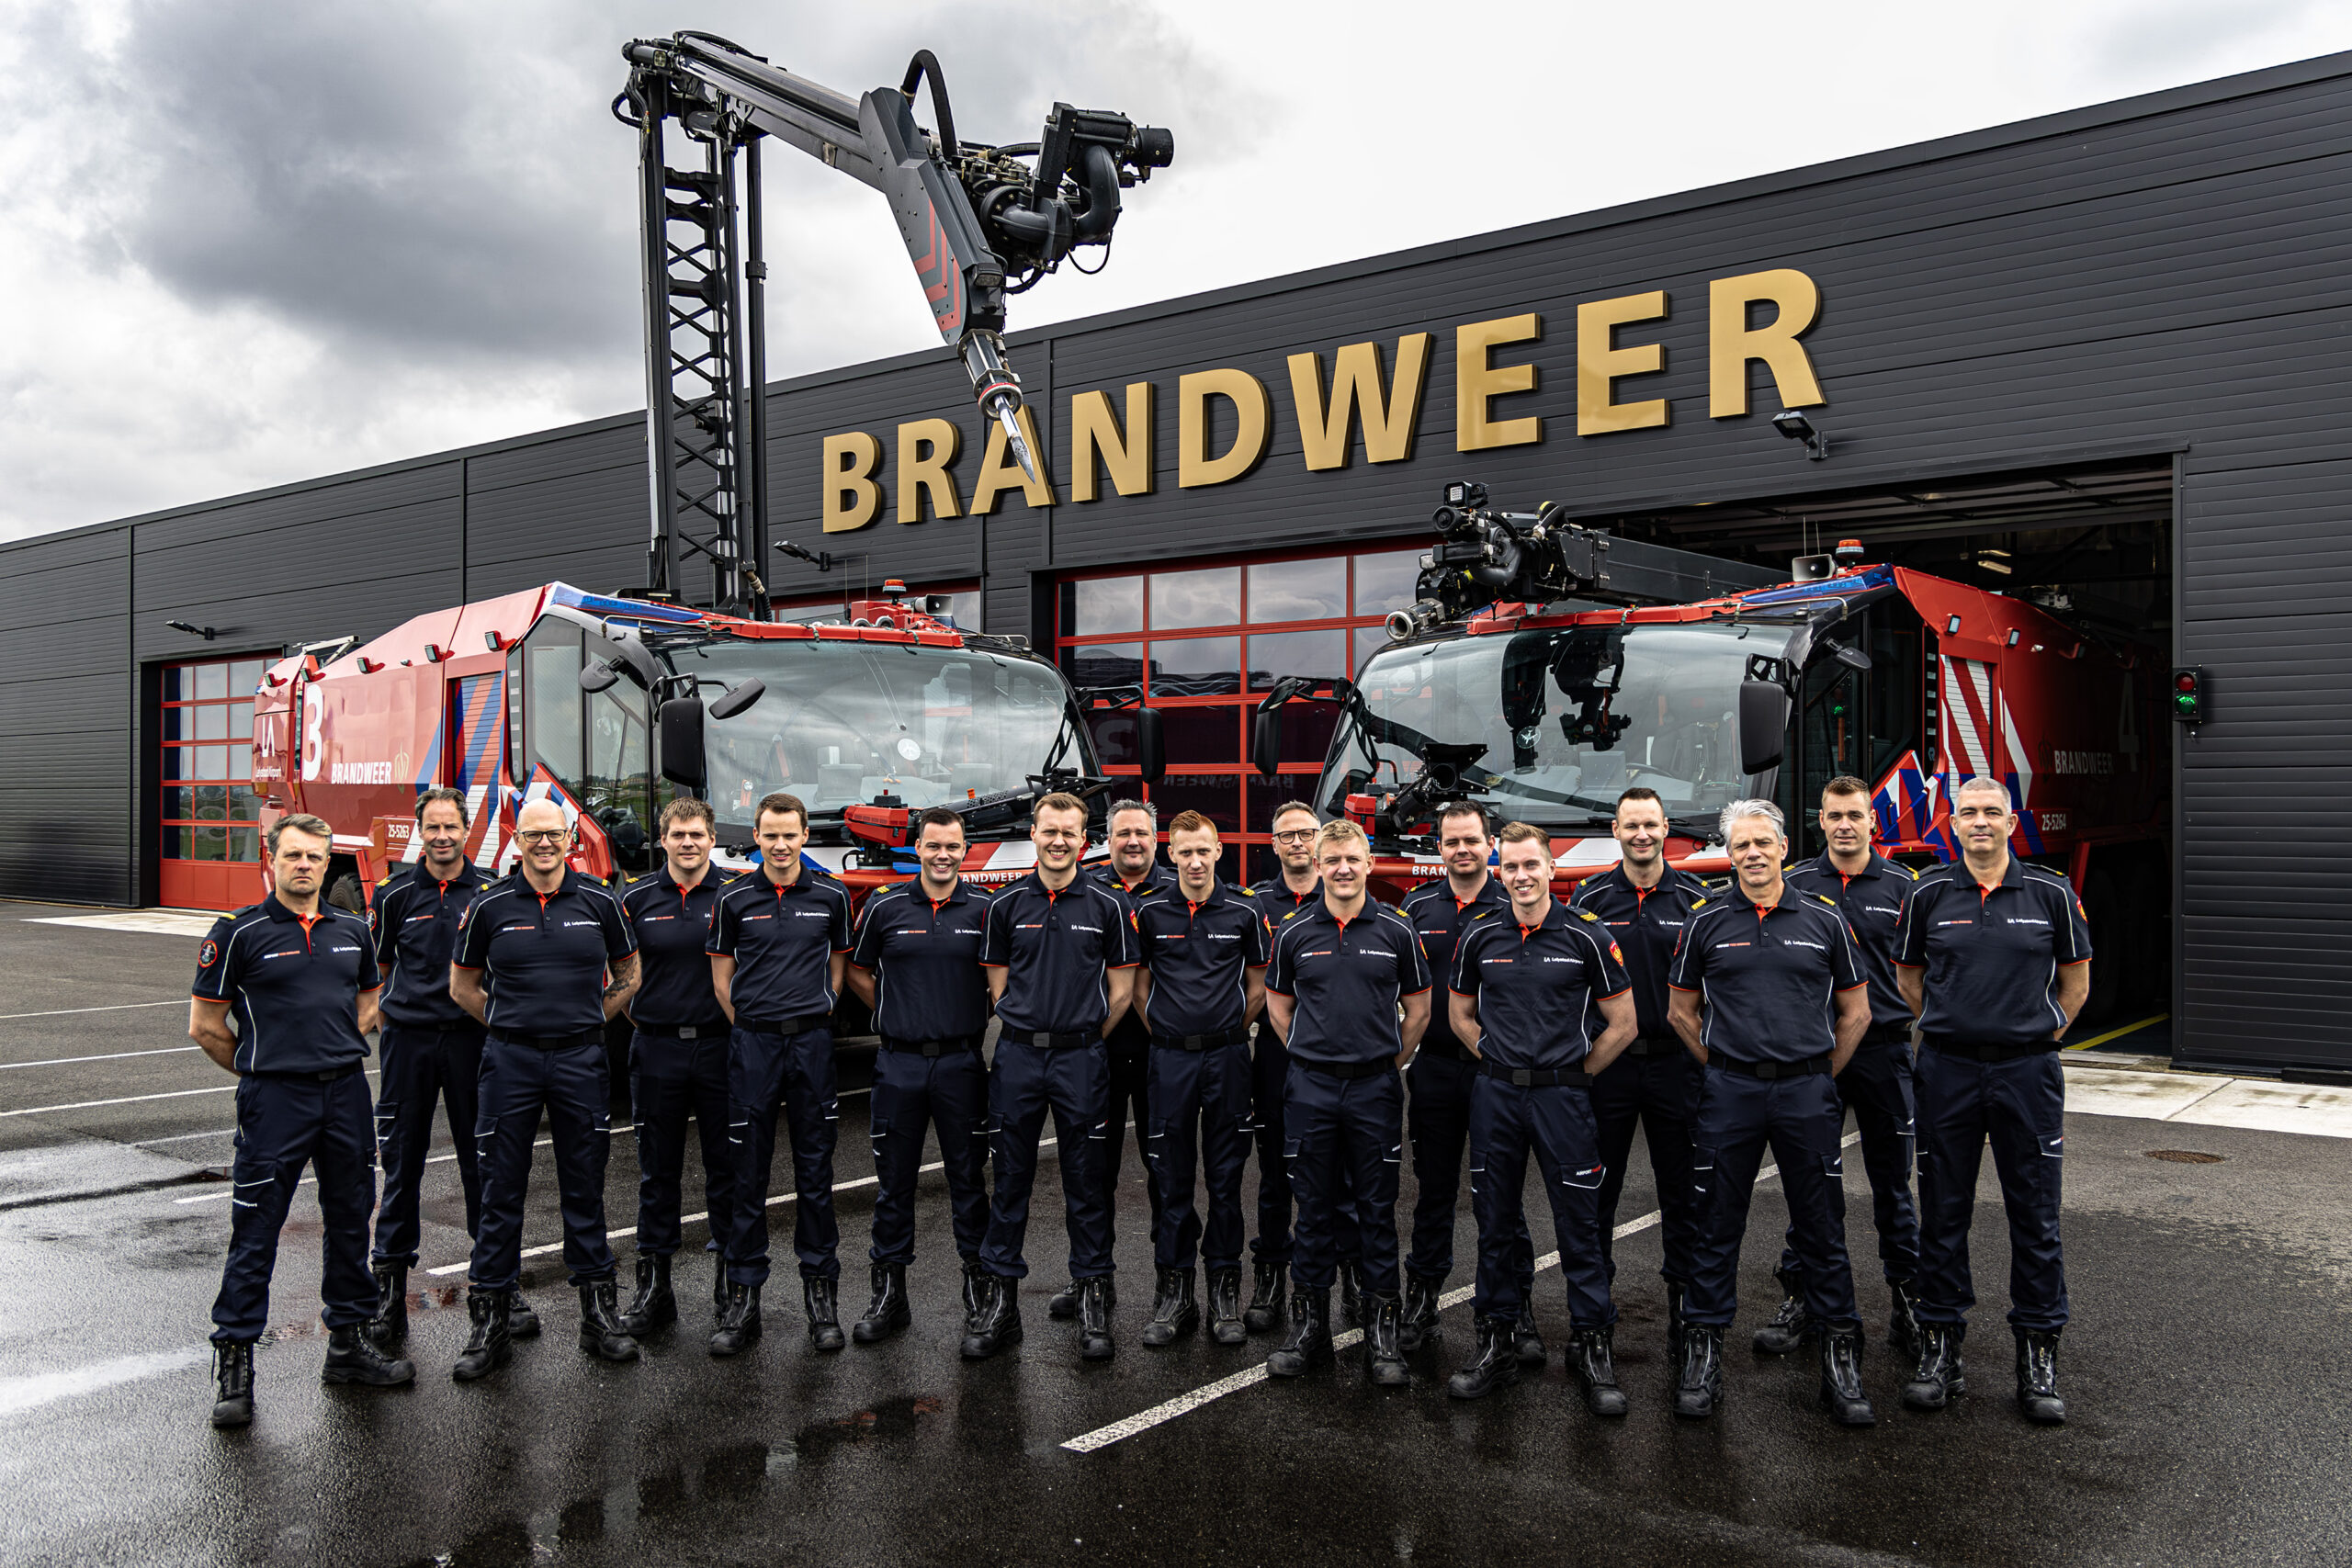 Groepsfoto van alle brandweermannen voor de kazerne van Brandweer Lelystad